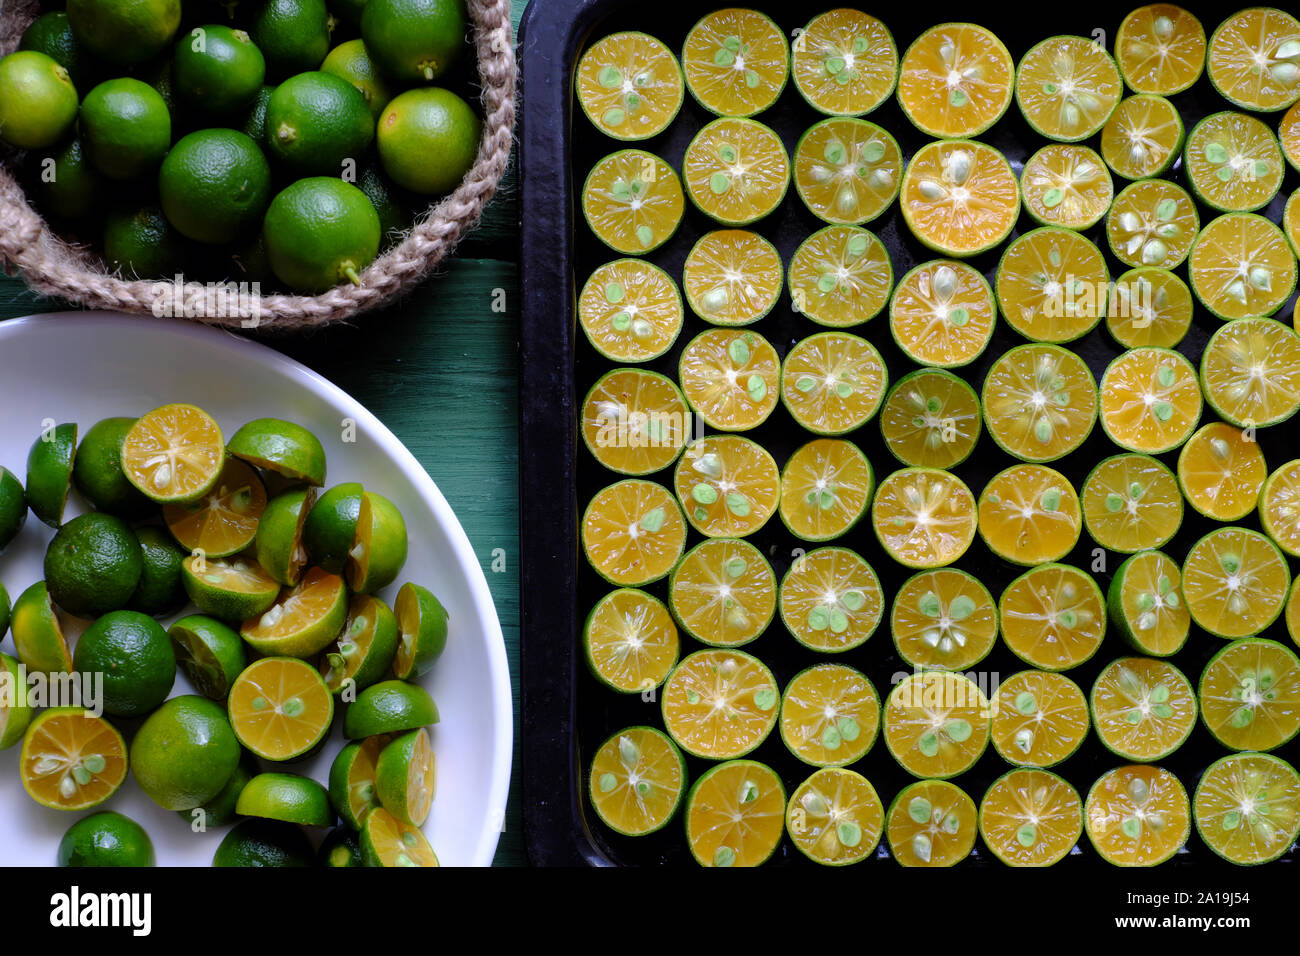 Ansicht von oben schwarz Fach vieler kumquat Obst in der Hälfte mit Green Peel und gelbe Fleisch schnitt am grünen Holz- Hintergrund, dieses saure Früchte reich an Vitamin C, er Stockfoto